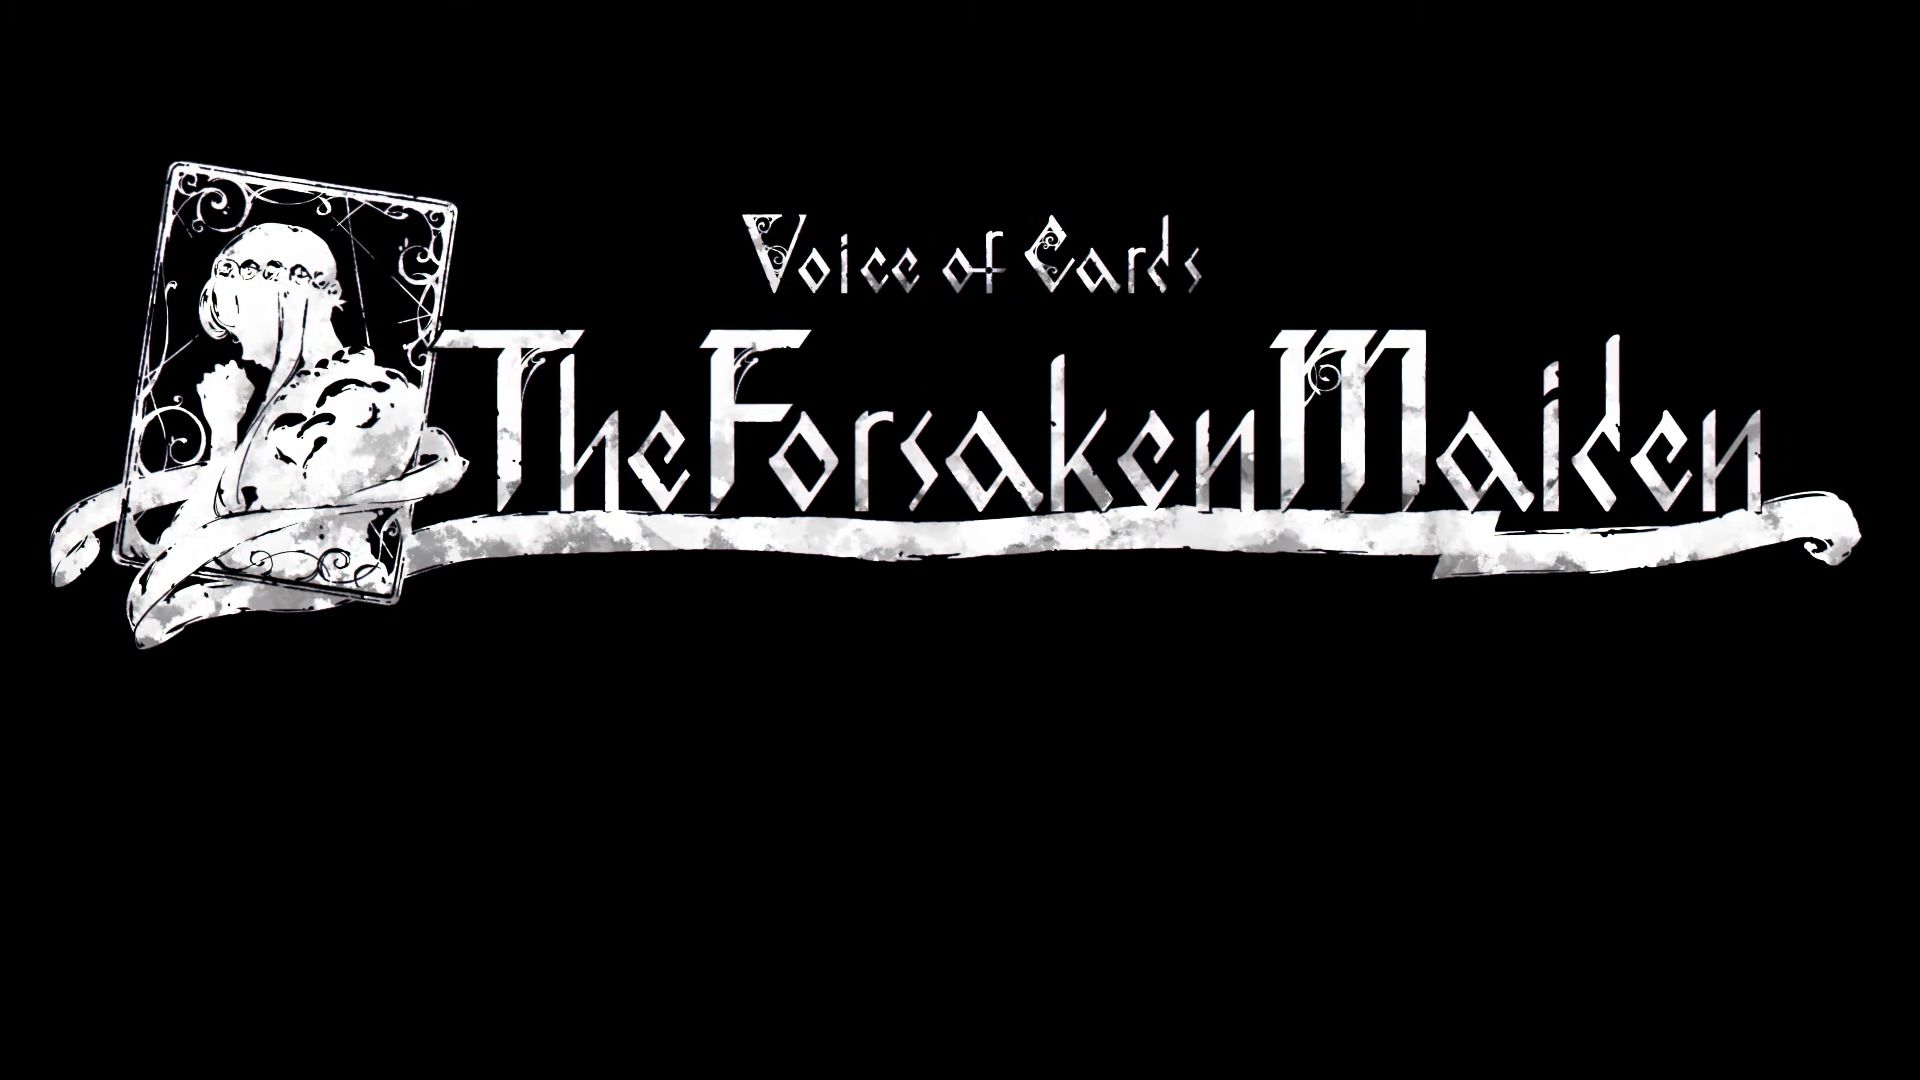 Voice of Cards: The Forsaken Maiden se lanzará el 17 de febrero para PS4, PC y Nintendo Switch